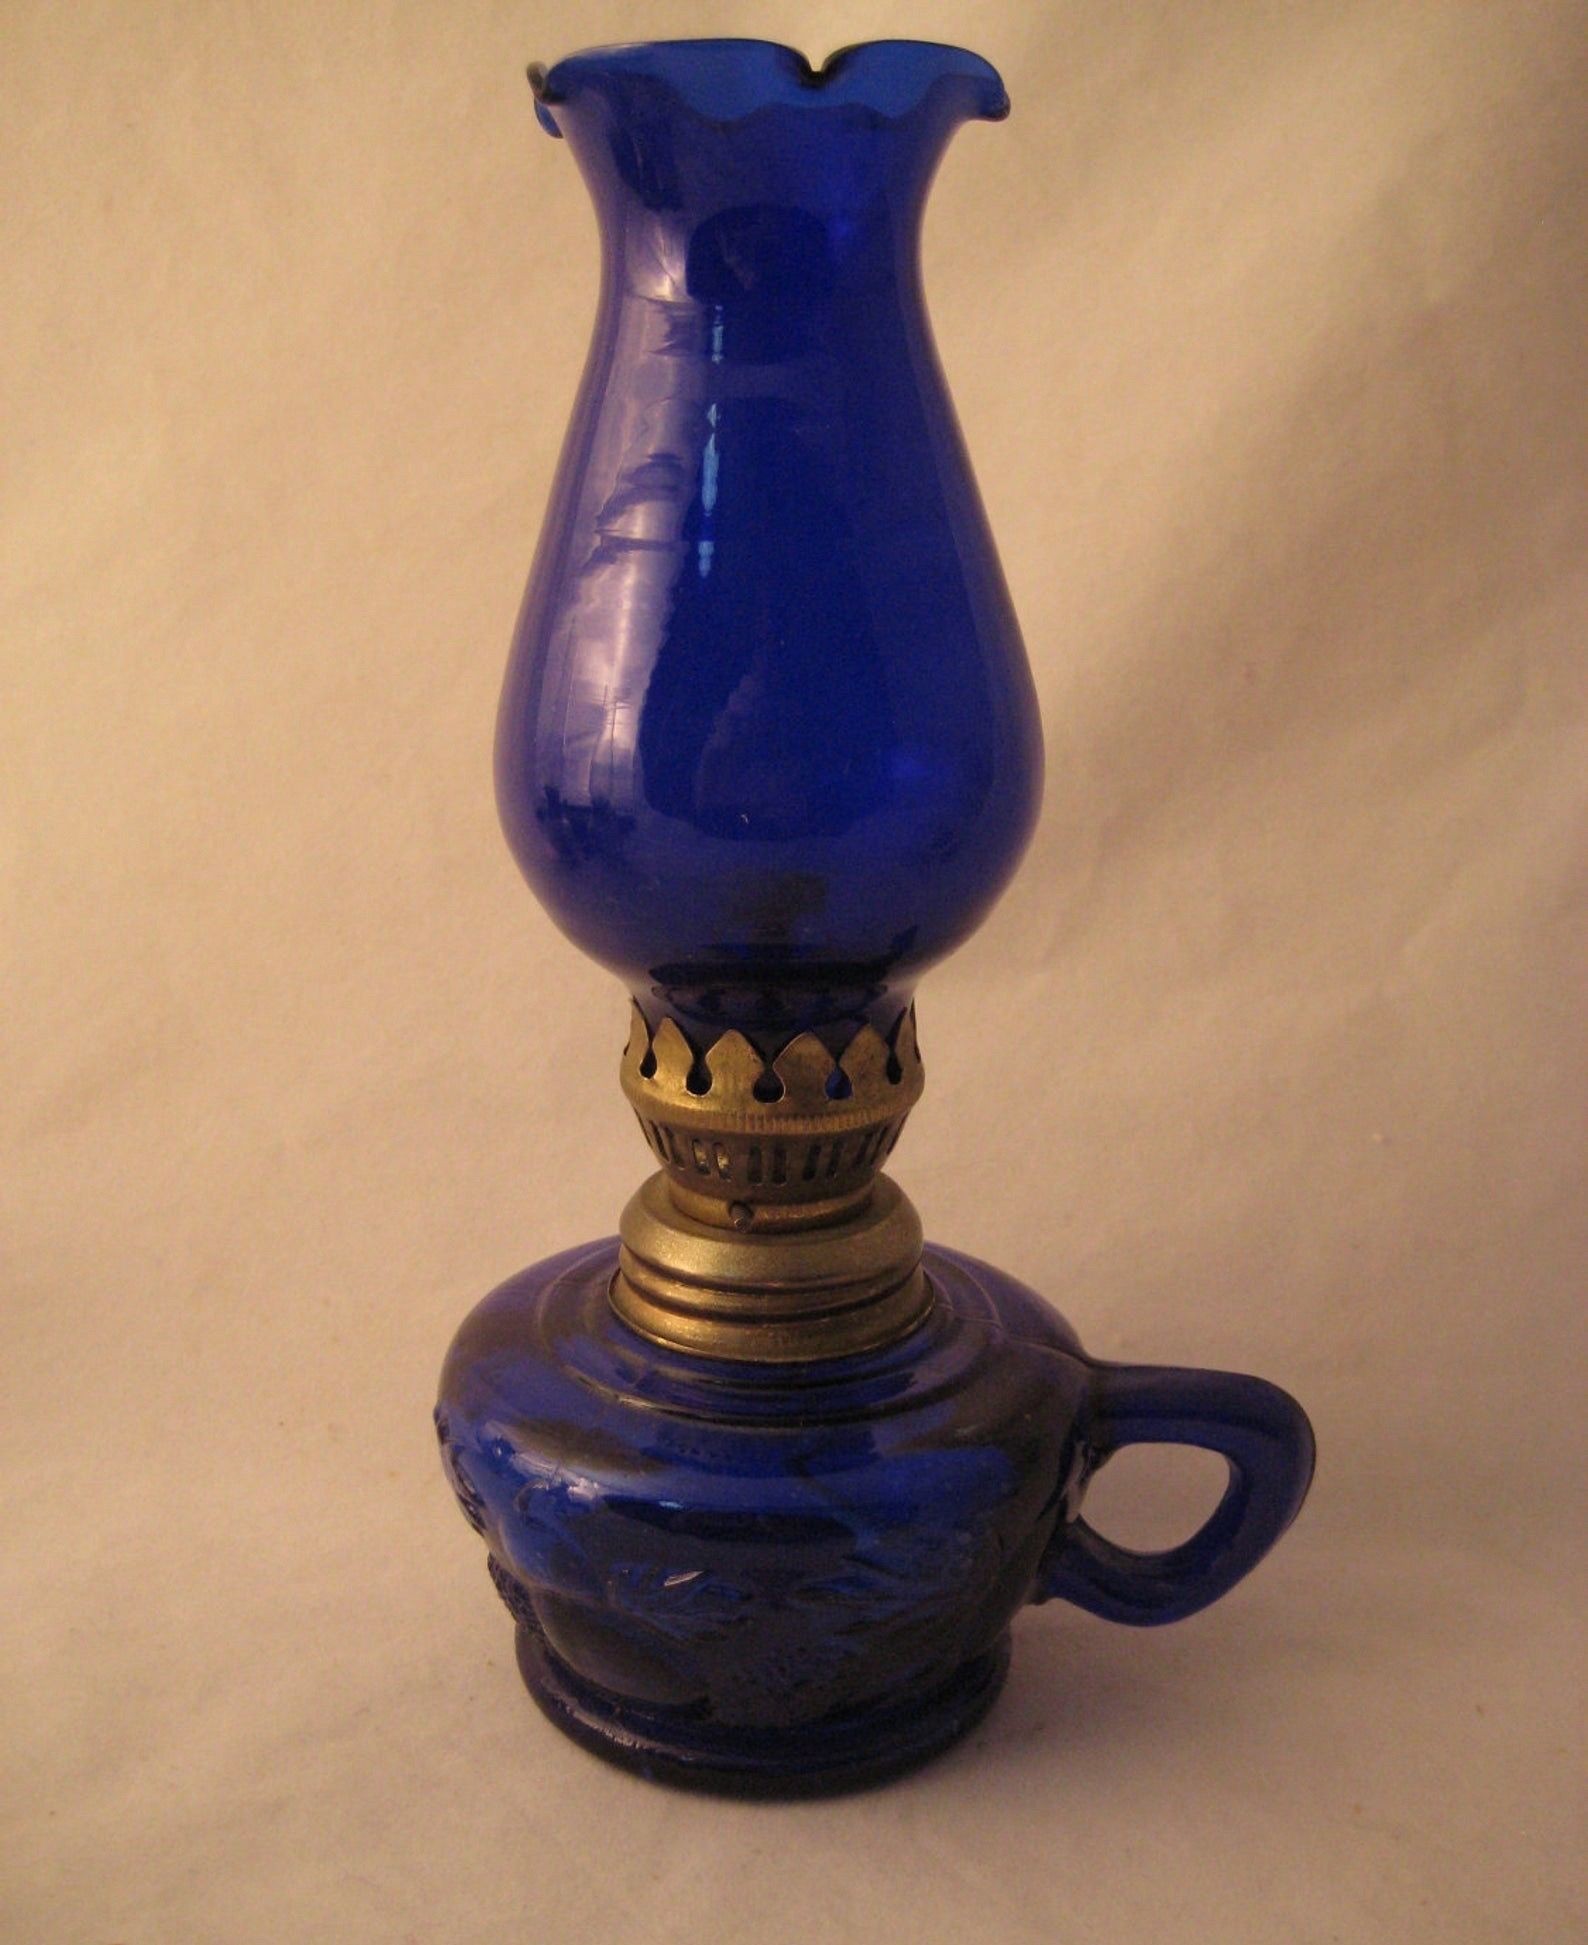 1950s vintage cobalt blue glass oil lamp